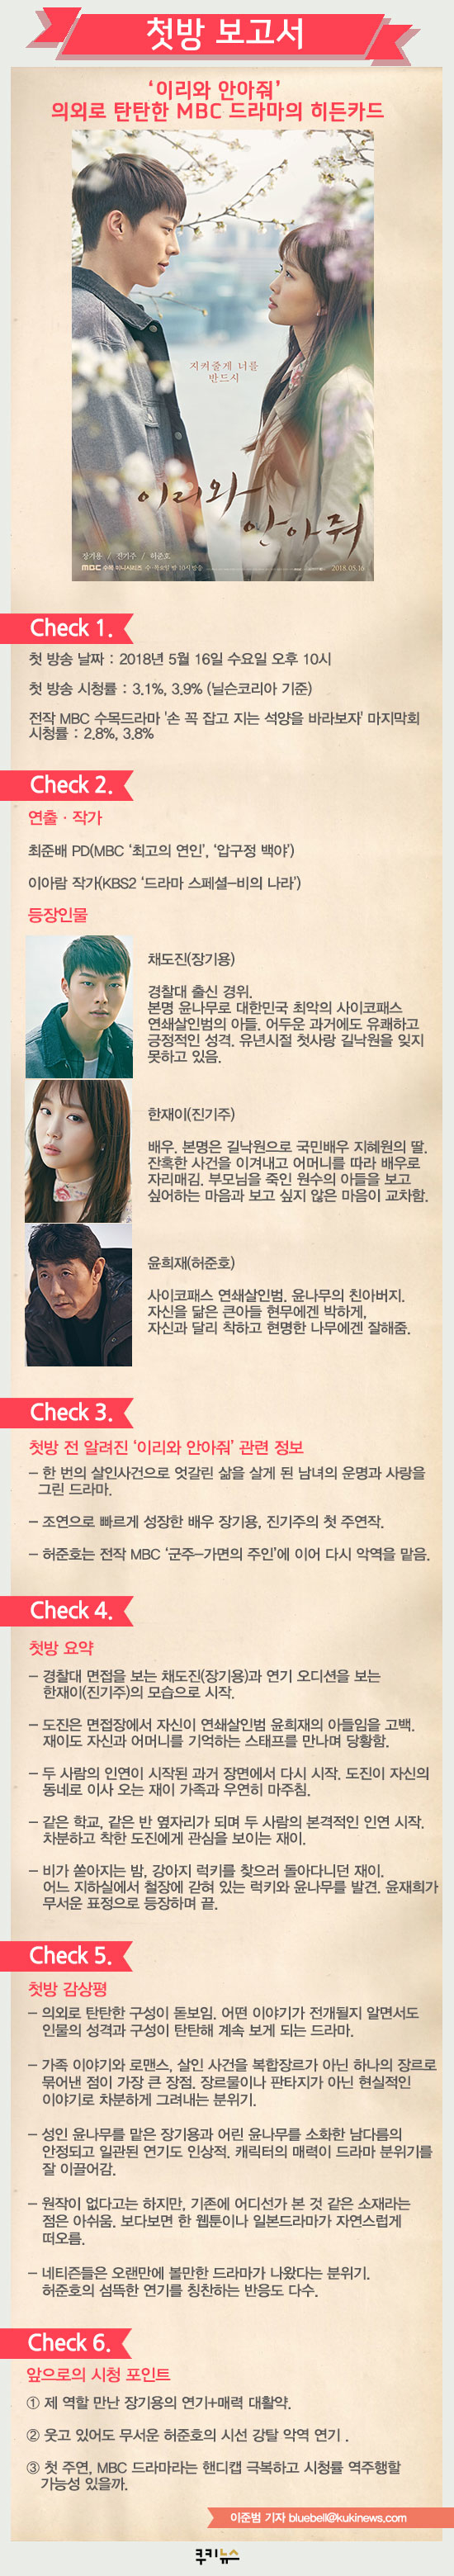 [첫방 보고서] ‘이리와 안아줘’ 의외로 탄탄한 MBC 드라마의 히든카드